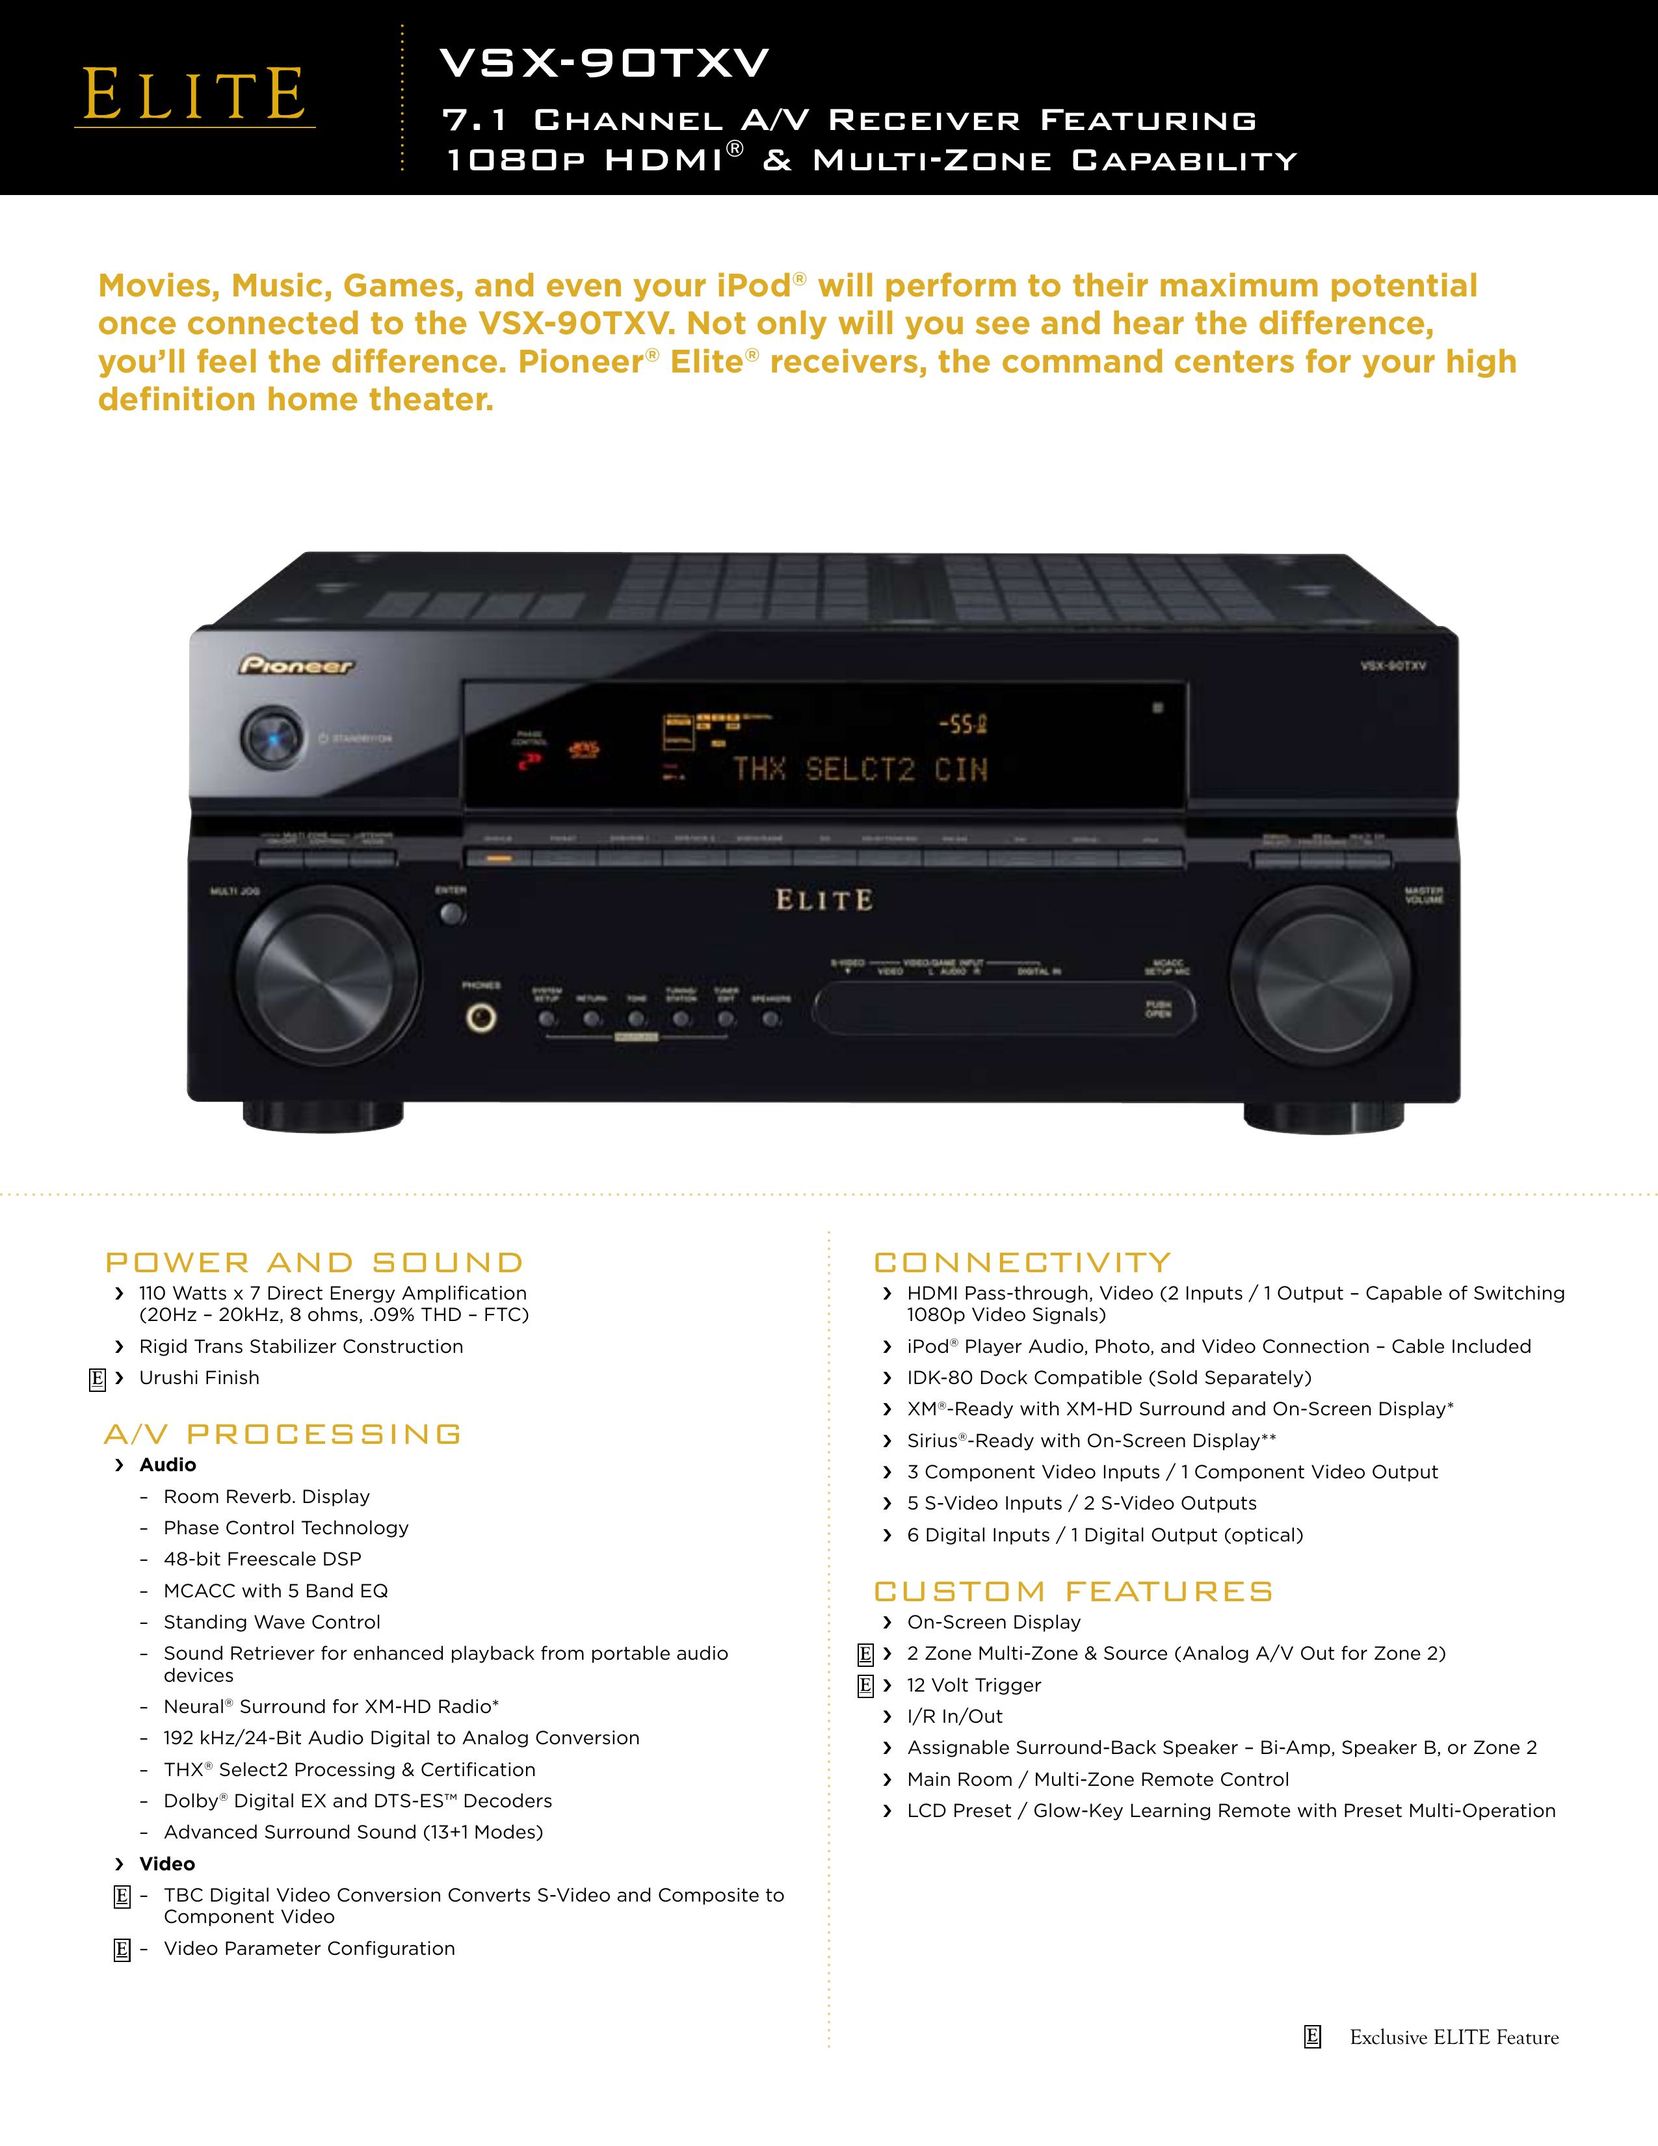 Elite VSX-90TXV Stereo Receiver User Manual